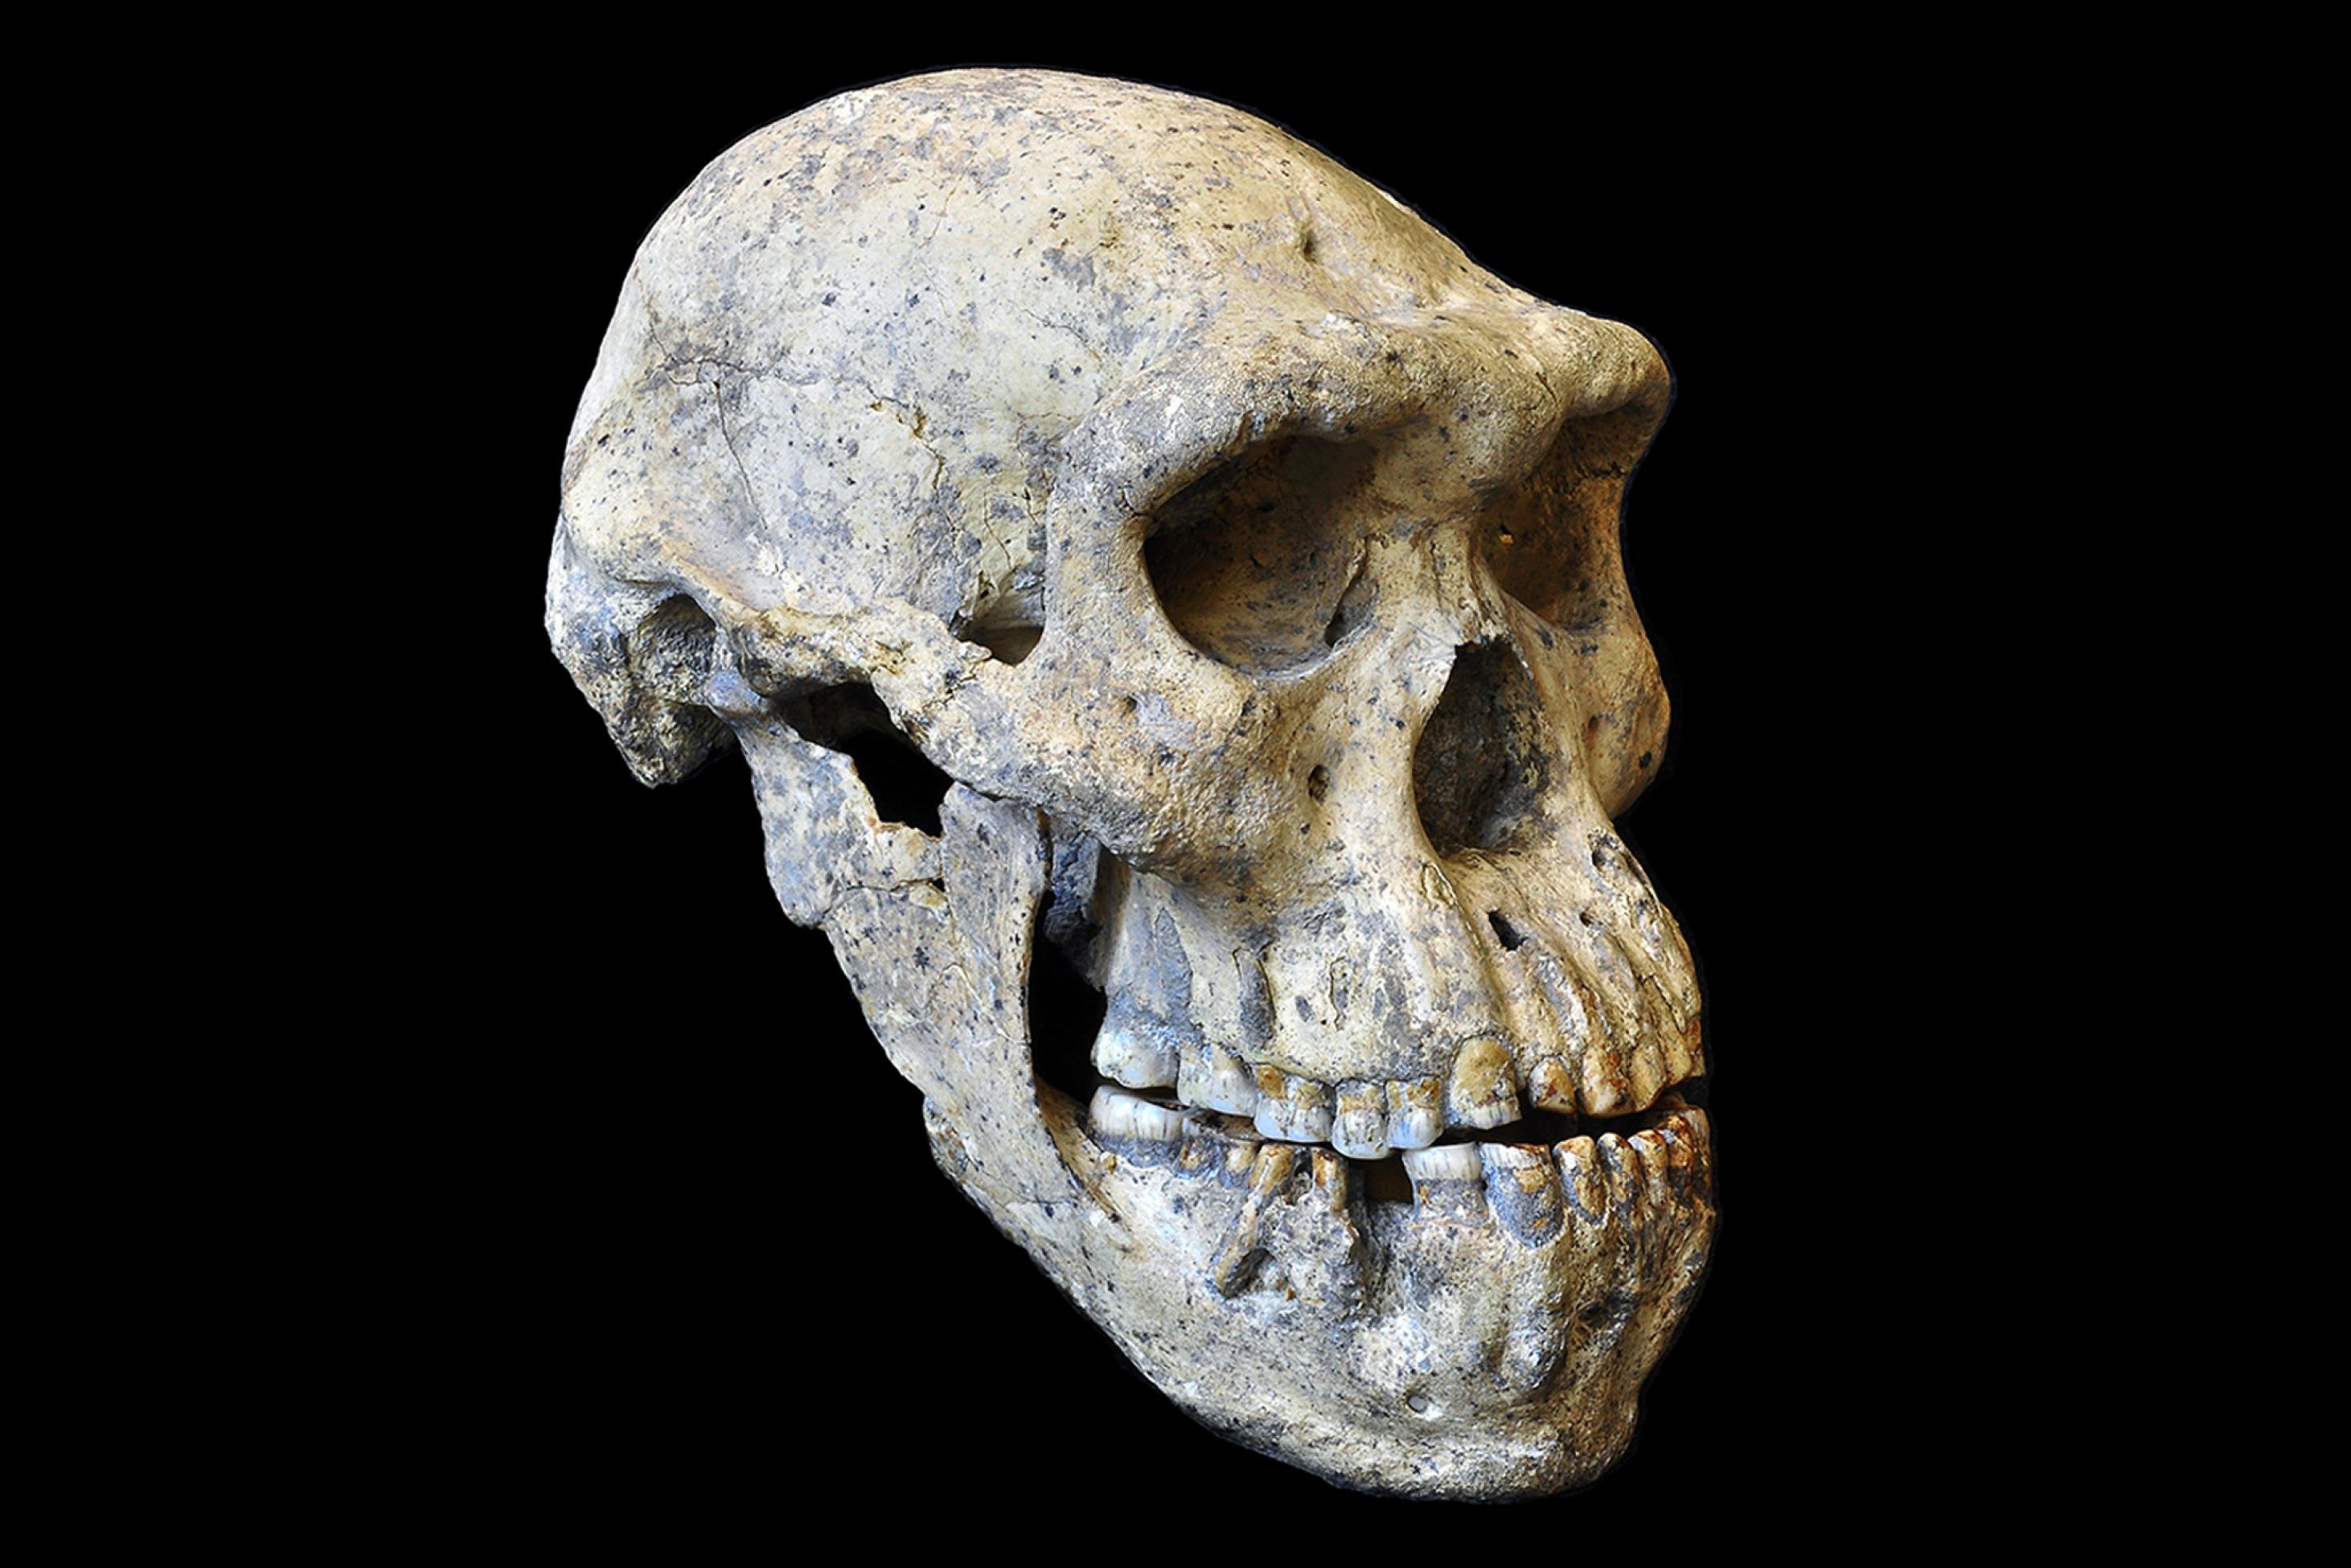 Das Foto zeigt den perfekt erhaltenen versteinerten Schädel, der in der georgischen Ruinenstadt Dmanisi als fünftes Fossil nach vier anderen Schädeln ausgegraben wurde. Der Ur- oder Vormensch besaß ein ungewöhnlich kleines Gehirn, das ein Volumen von nur 546 Kubikzentimeter aufwies. Er hatte zudem dicke Überaugenwülste und recht große Kiefer – das alles sind urtümliche Merkmale. Die anderen, an derselben Stelle gefundenen Schädel wirken dagegen deutlich moderner. Aber alle stammen aus dergleichen Zeit vor 1,8 Millionen Jahren.